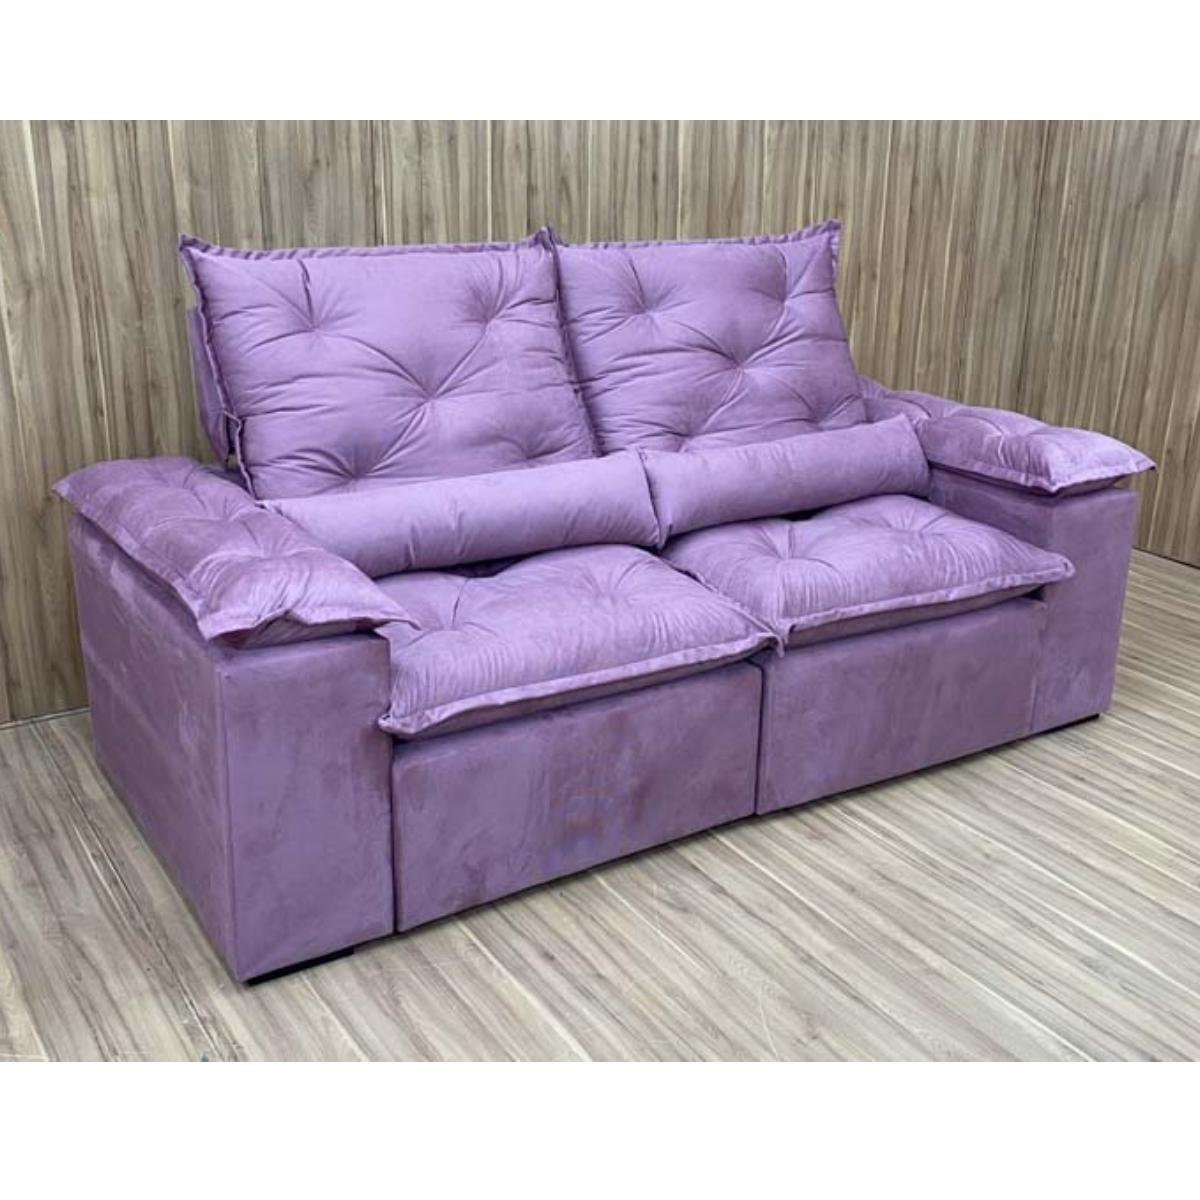 Sofa Reclinavel Retratil Design Elegante Athena 2,30m Veludo Cor:Violeta - 6